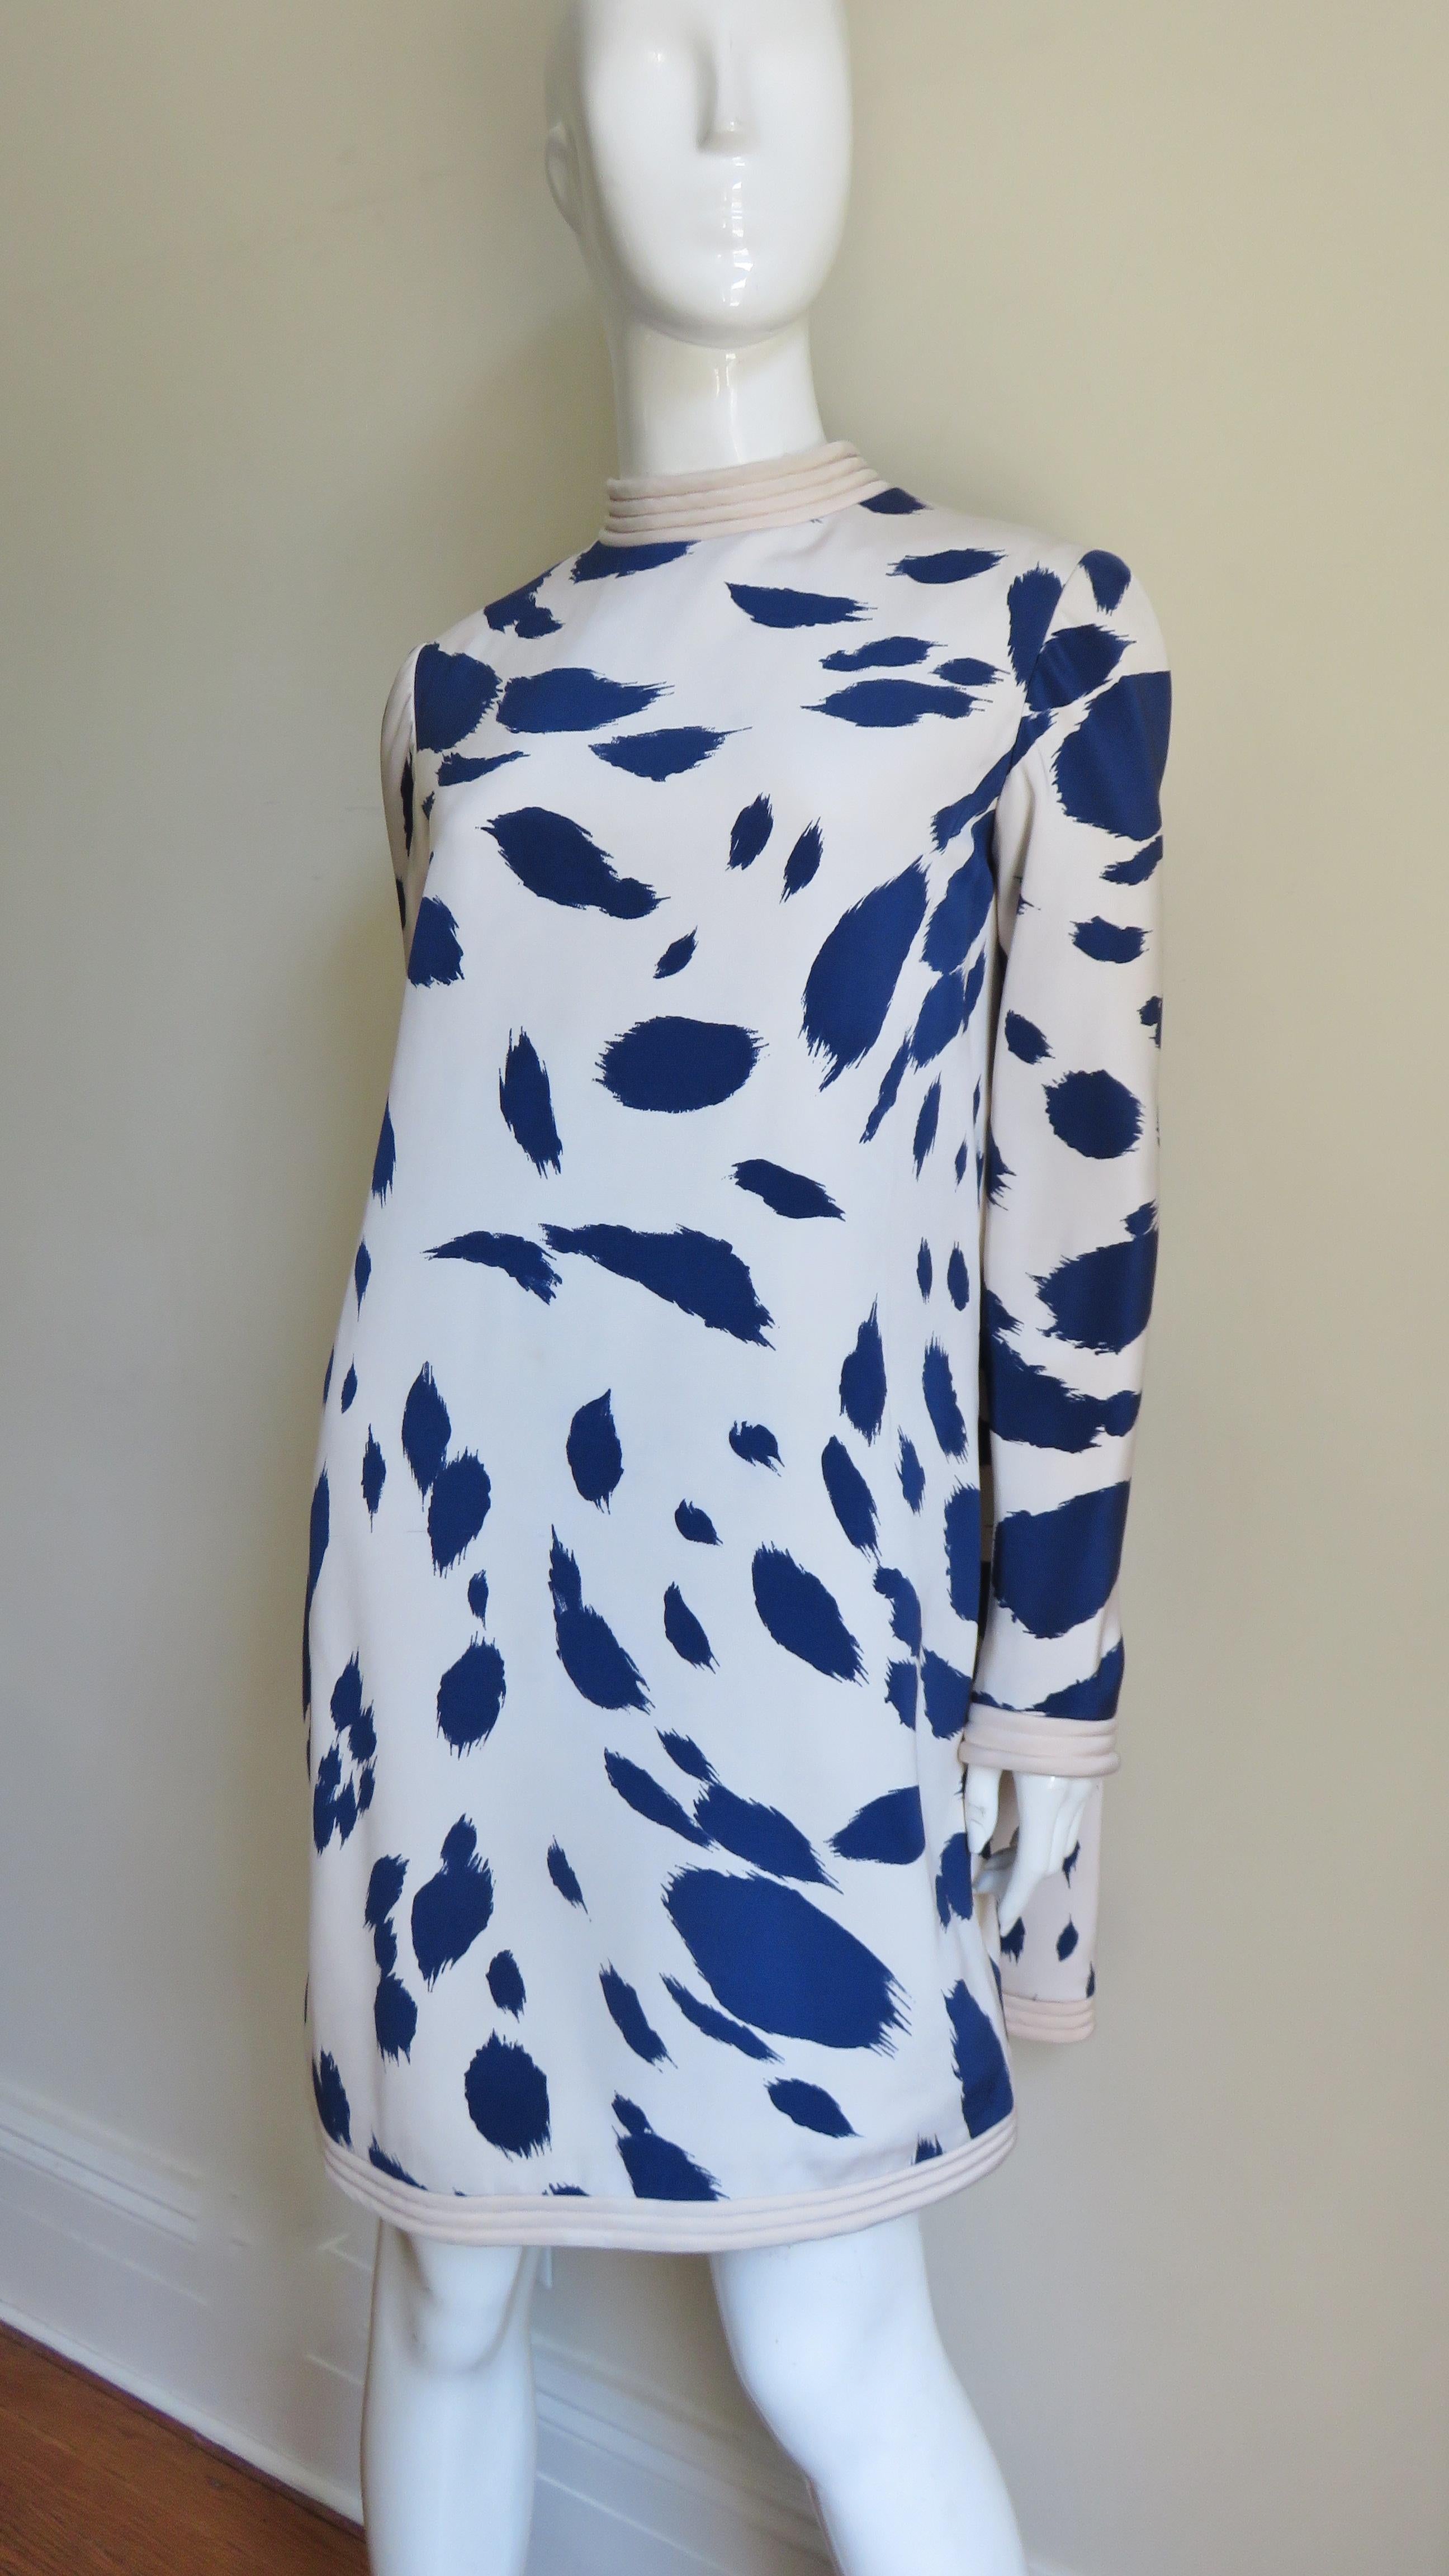 Une robe incroyable de Pierre Cardin en soie écrue avec des formes abstraites de couleur marine.  L'encolure, les poignets et l'ourlet sont soulignés par des rangées de surpiqûres sur un blanc cassé uni. Un étonnant panneau de cape se déploie des